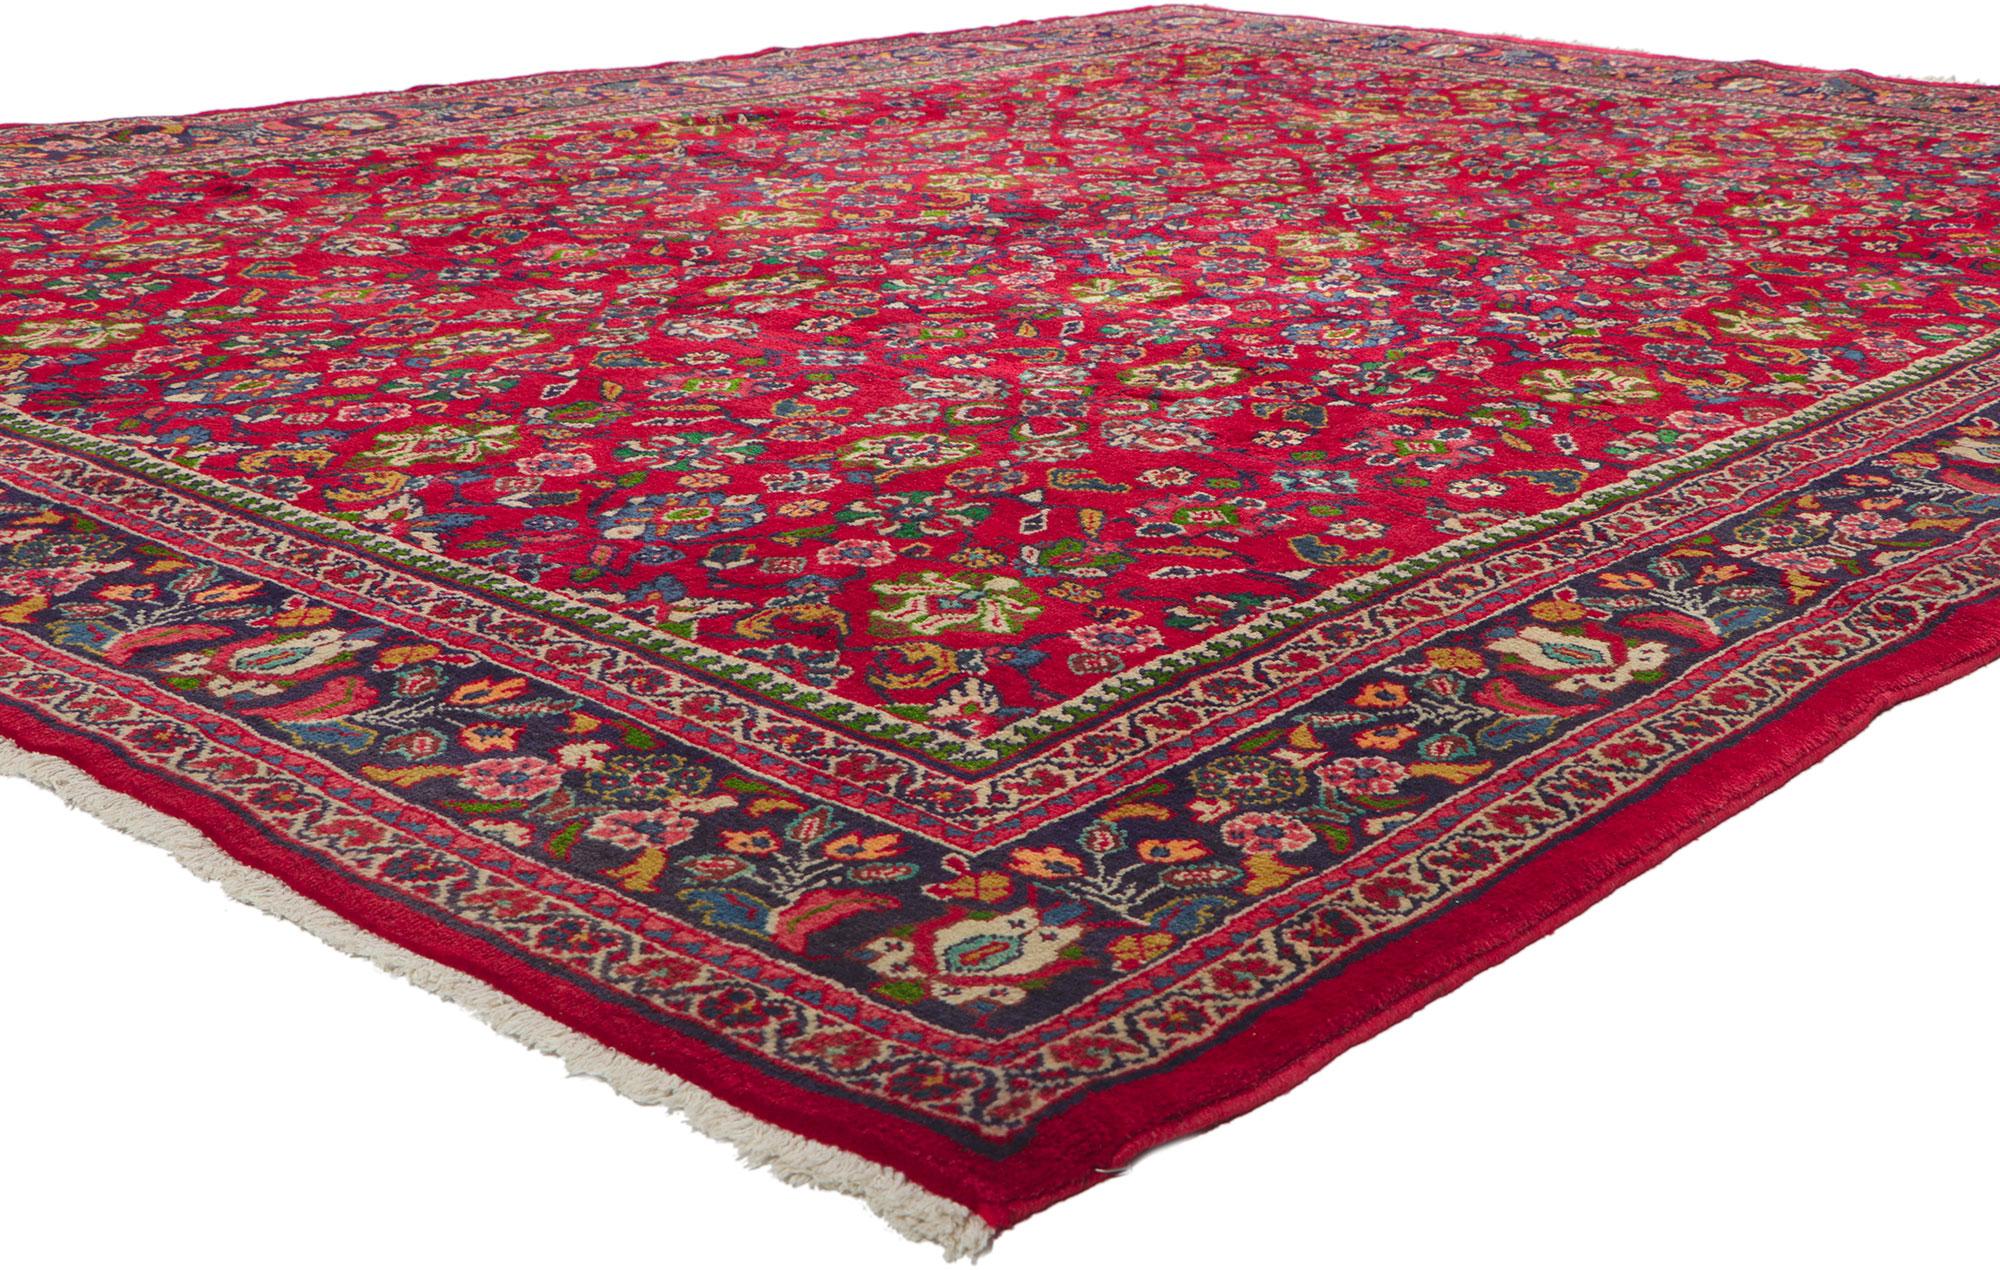 61095 Tapis Vintage Persian Mahal, 08'07 x 11'07.
Avec ses éléments ornementaux séduisants, ses détails et sa texture incroyables, ce tapis persan vintage Mahal en laine nouée à la main est une vision captivante de la beauté tissée. Le design